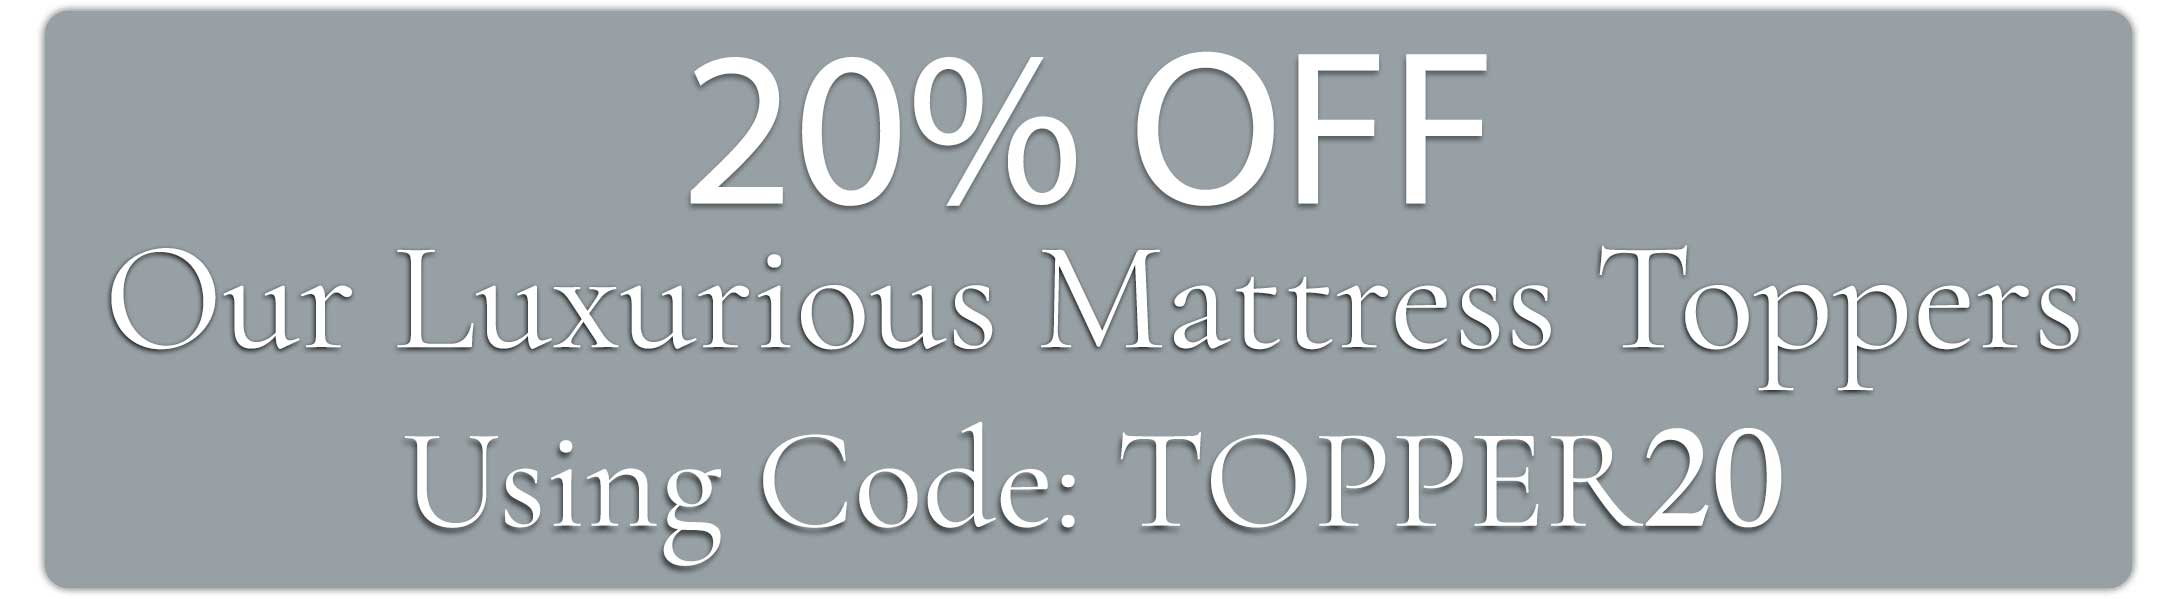 Award winning mattress topper sale discount code.